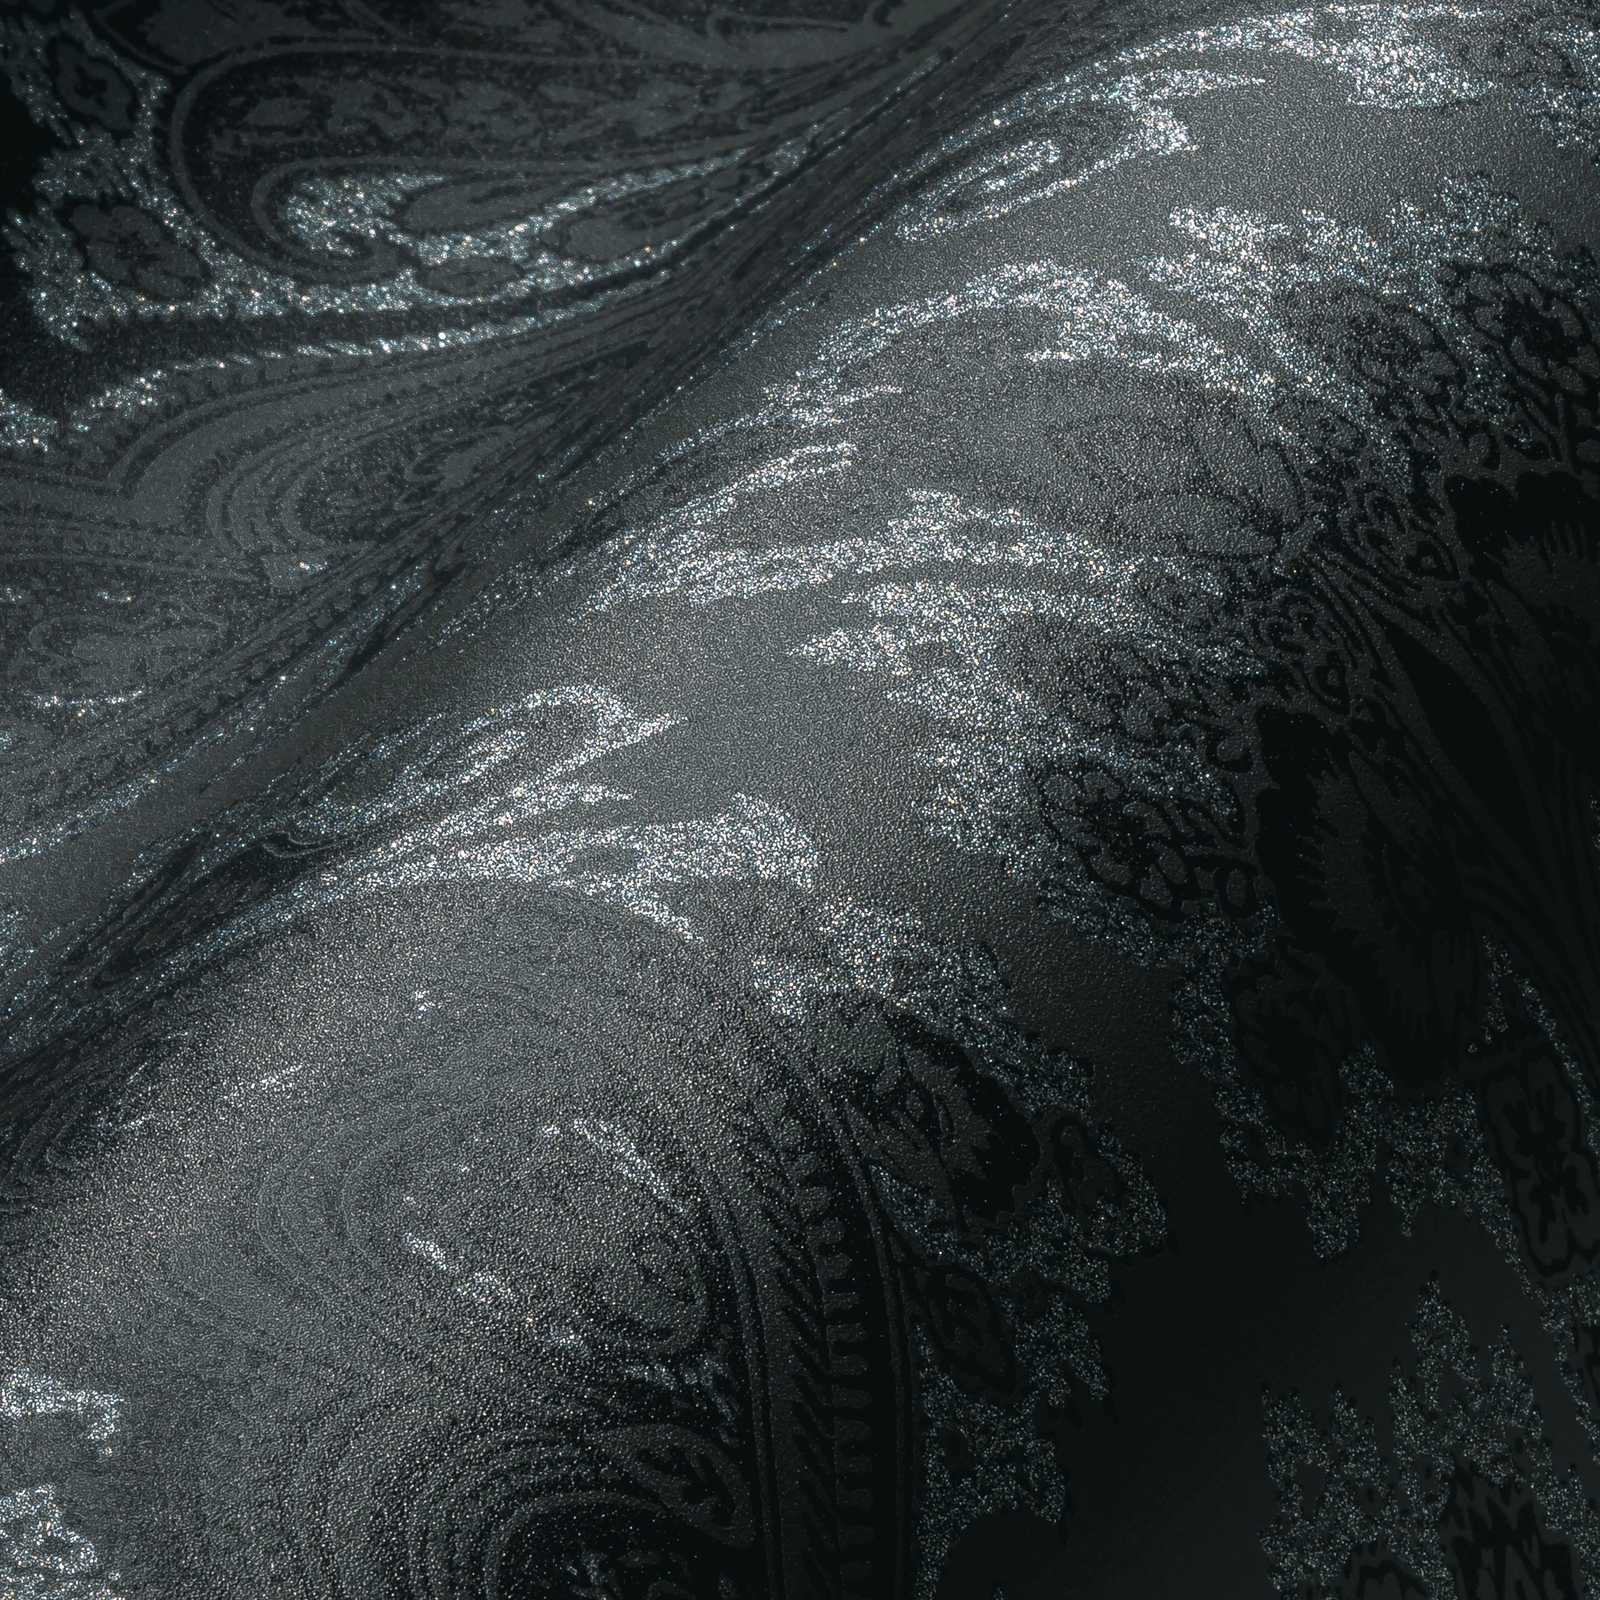             Zwart behang met ornament patroon & zilver effect - metallic, zwart
        